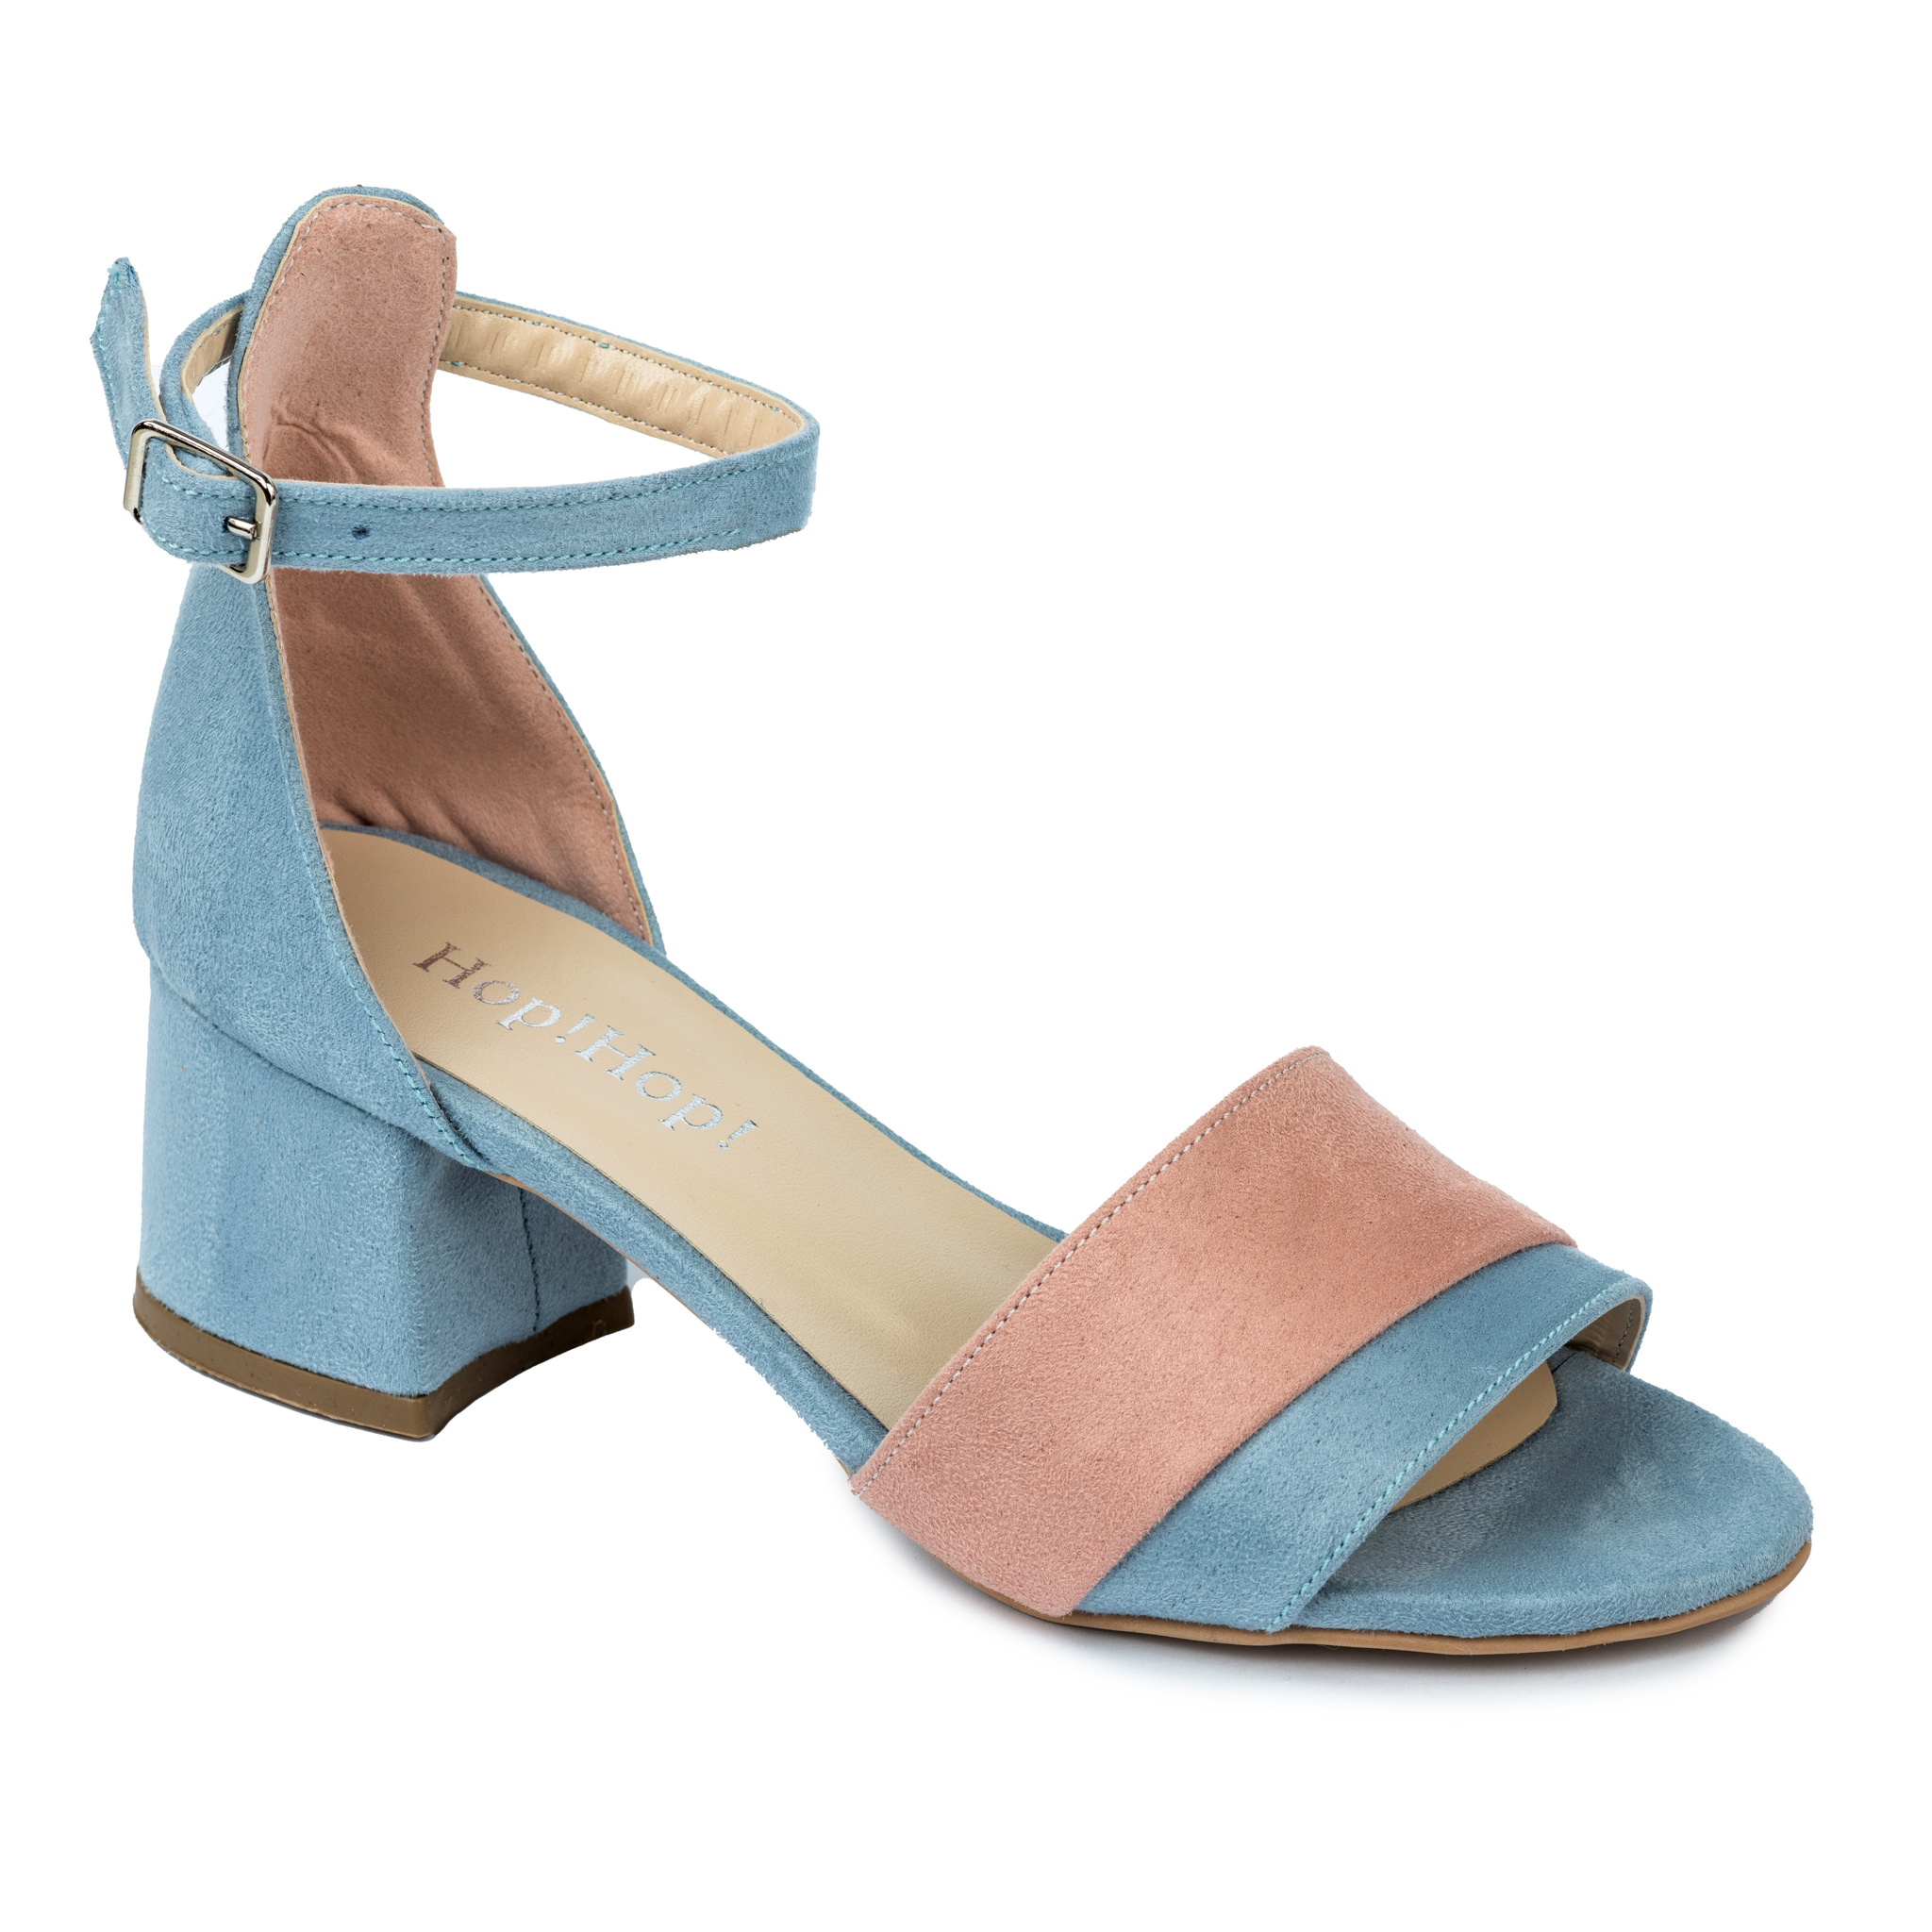 Women sandals A472 - BLUE